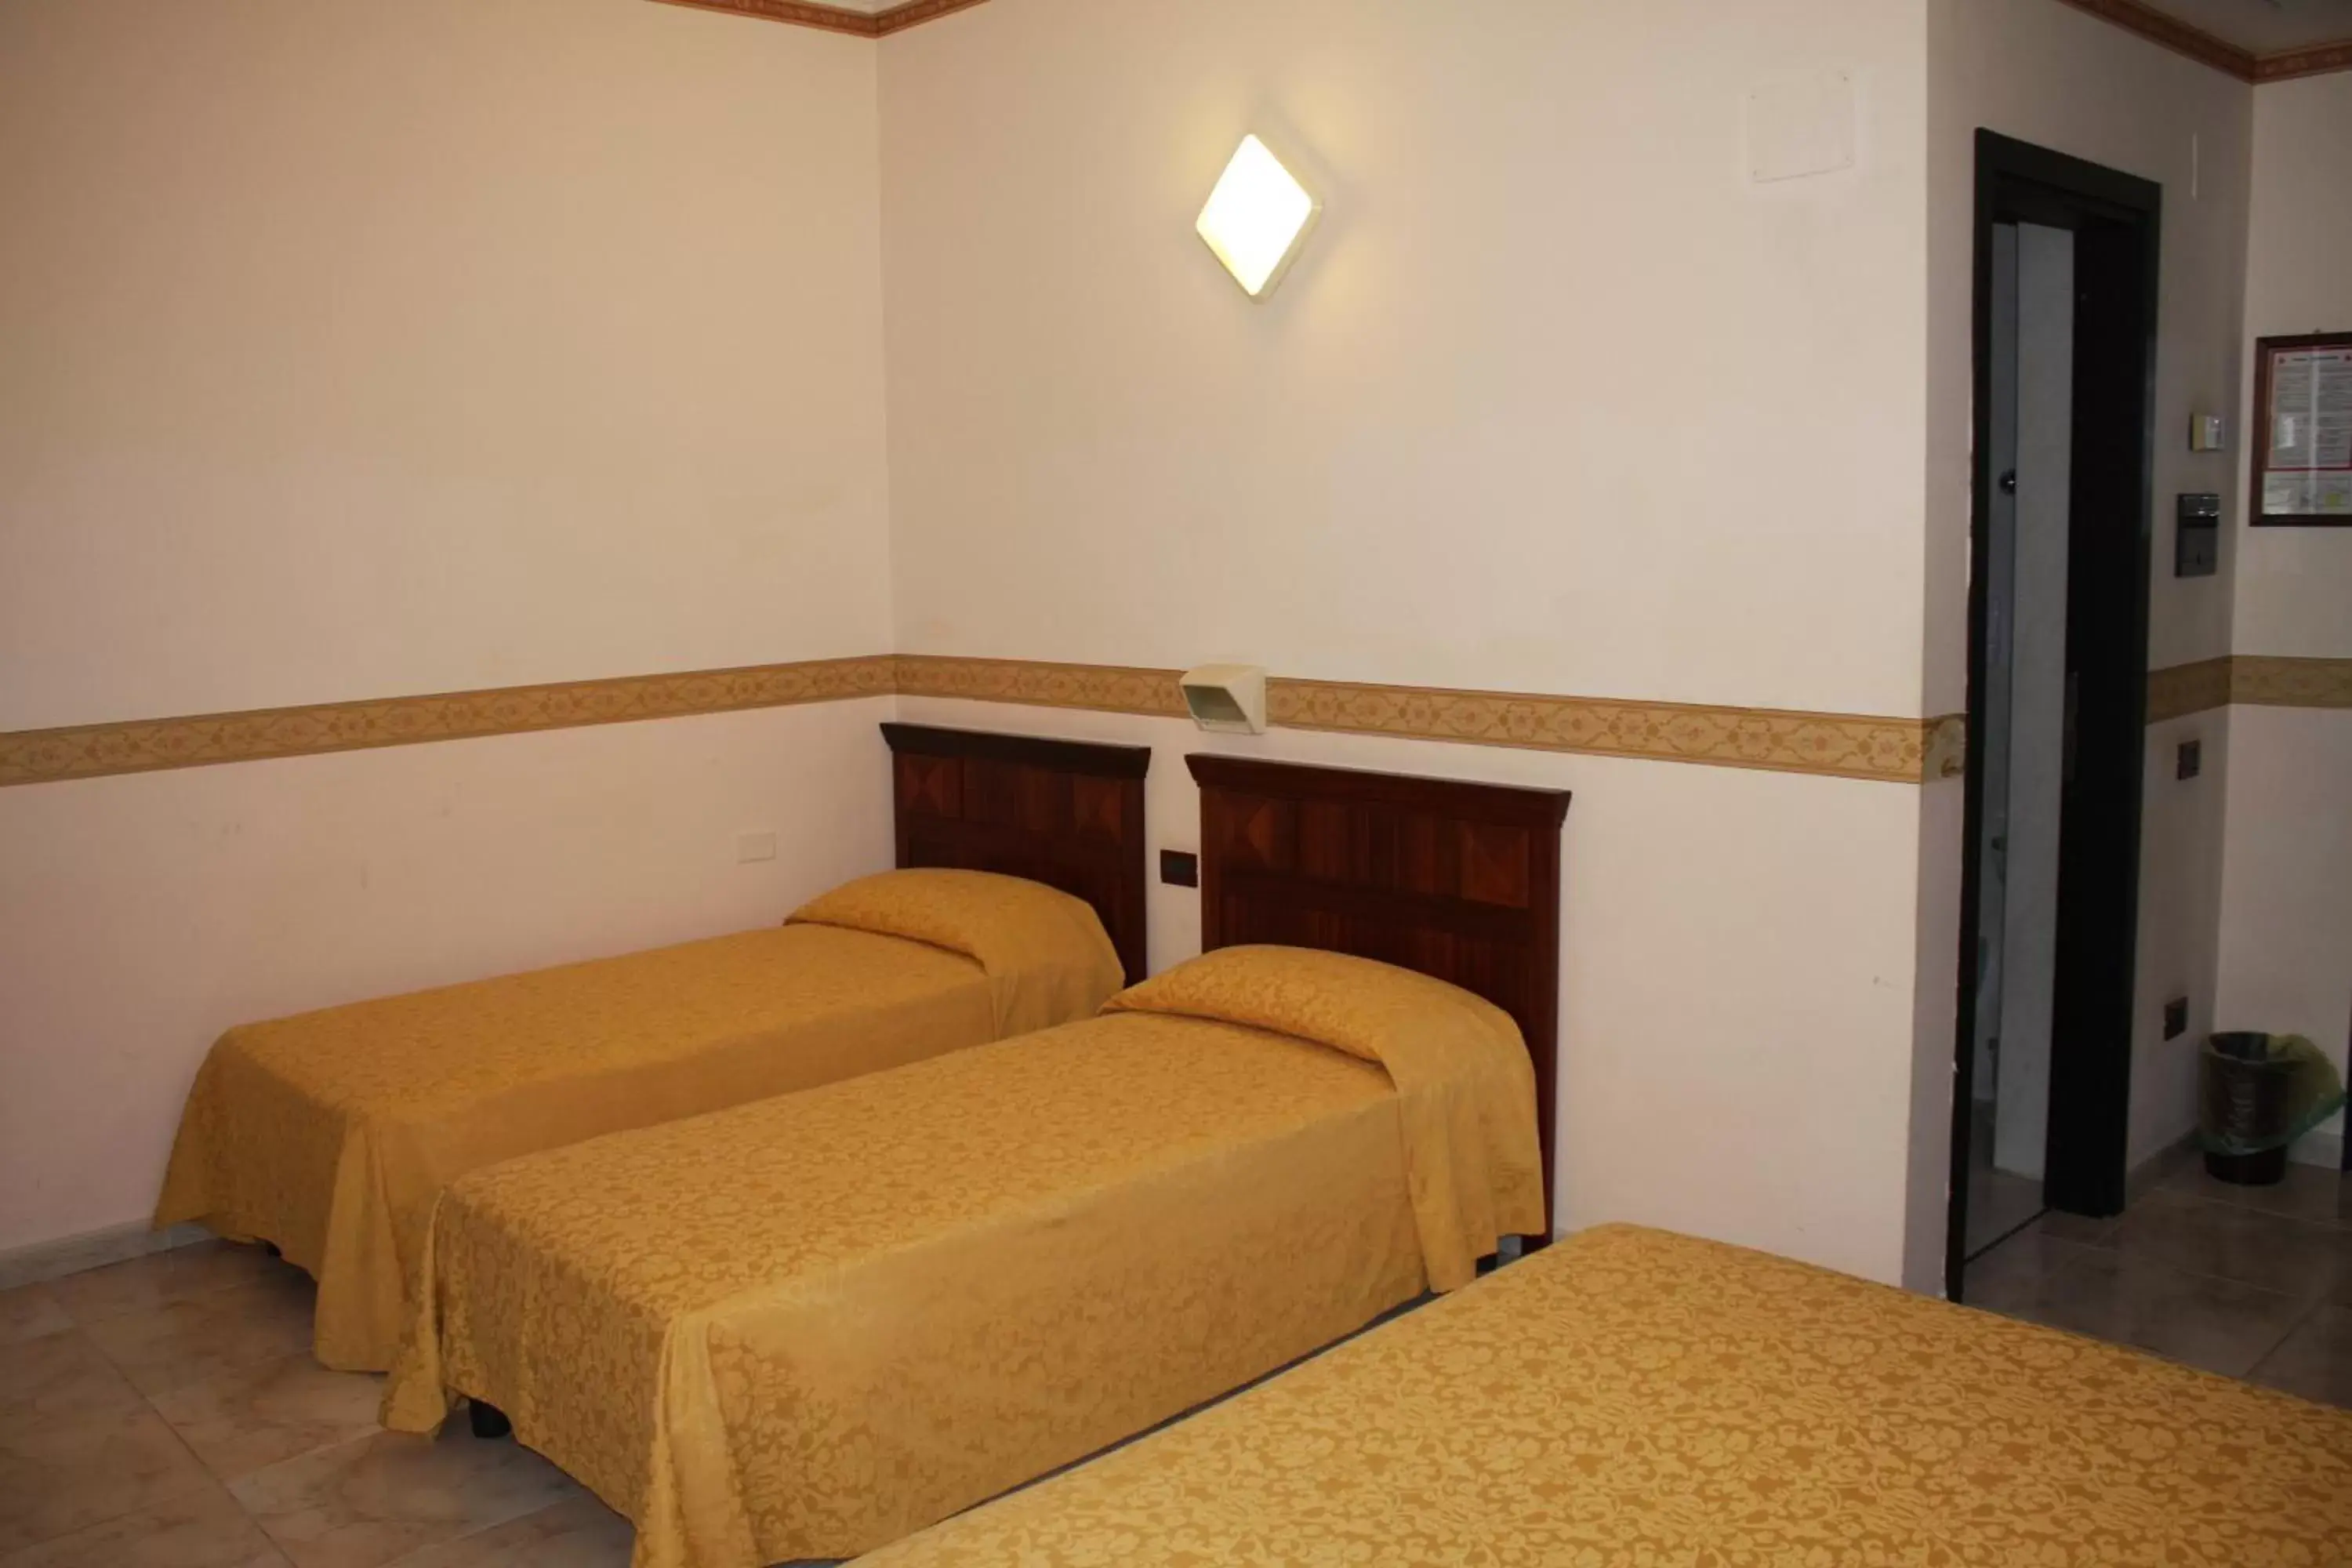 Bed, Room Photo in Grand Hotel degli Angeli